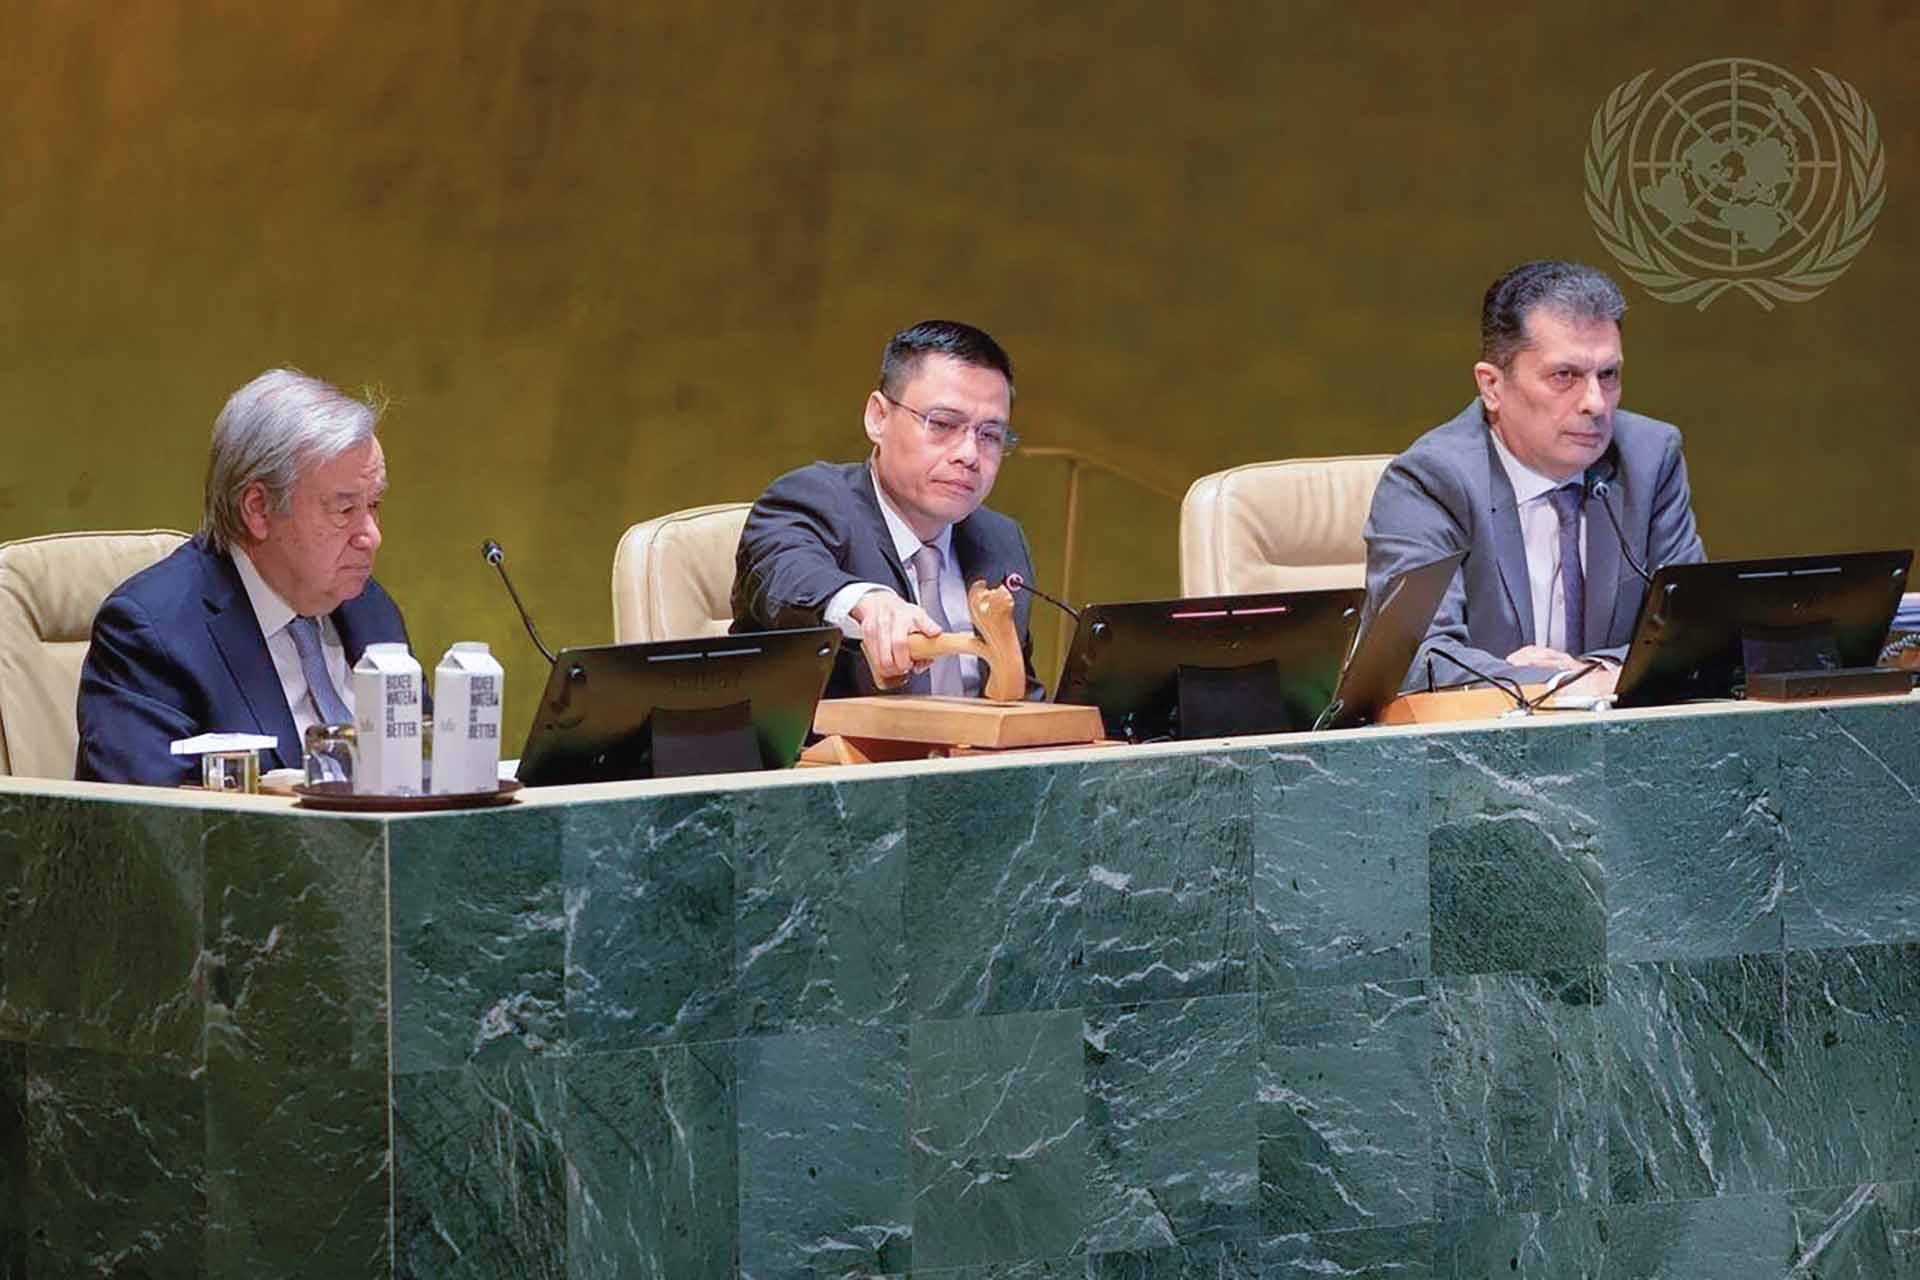 Đại sứ Đặng Hoàng Giang (giữa), Phó chủ tịch Đại hội đồng Liên hợp quốc khóa 77, Trưởng phái đoàn đại diện thường trực Việt Nam tại Liên hợp quốc, chủ trì một phiên họp của Đại hội đồng Liên hợp quốc.